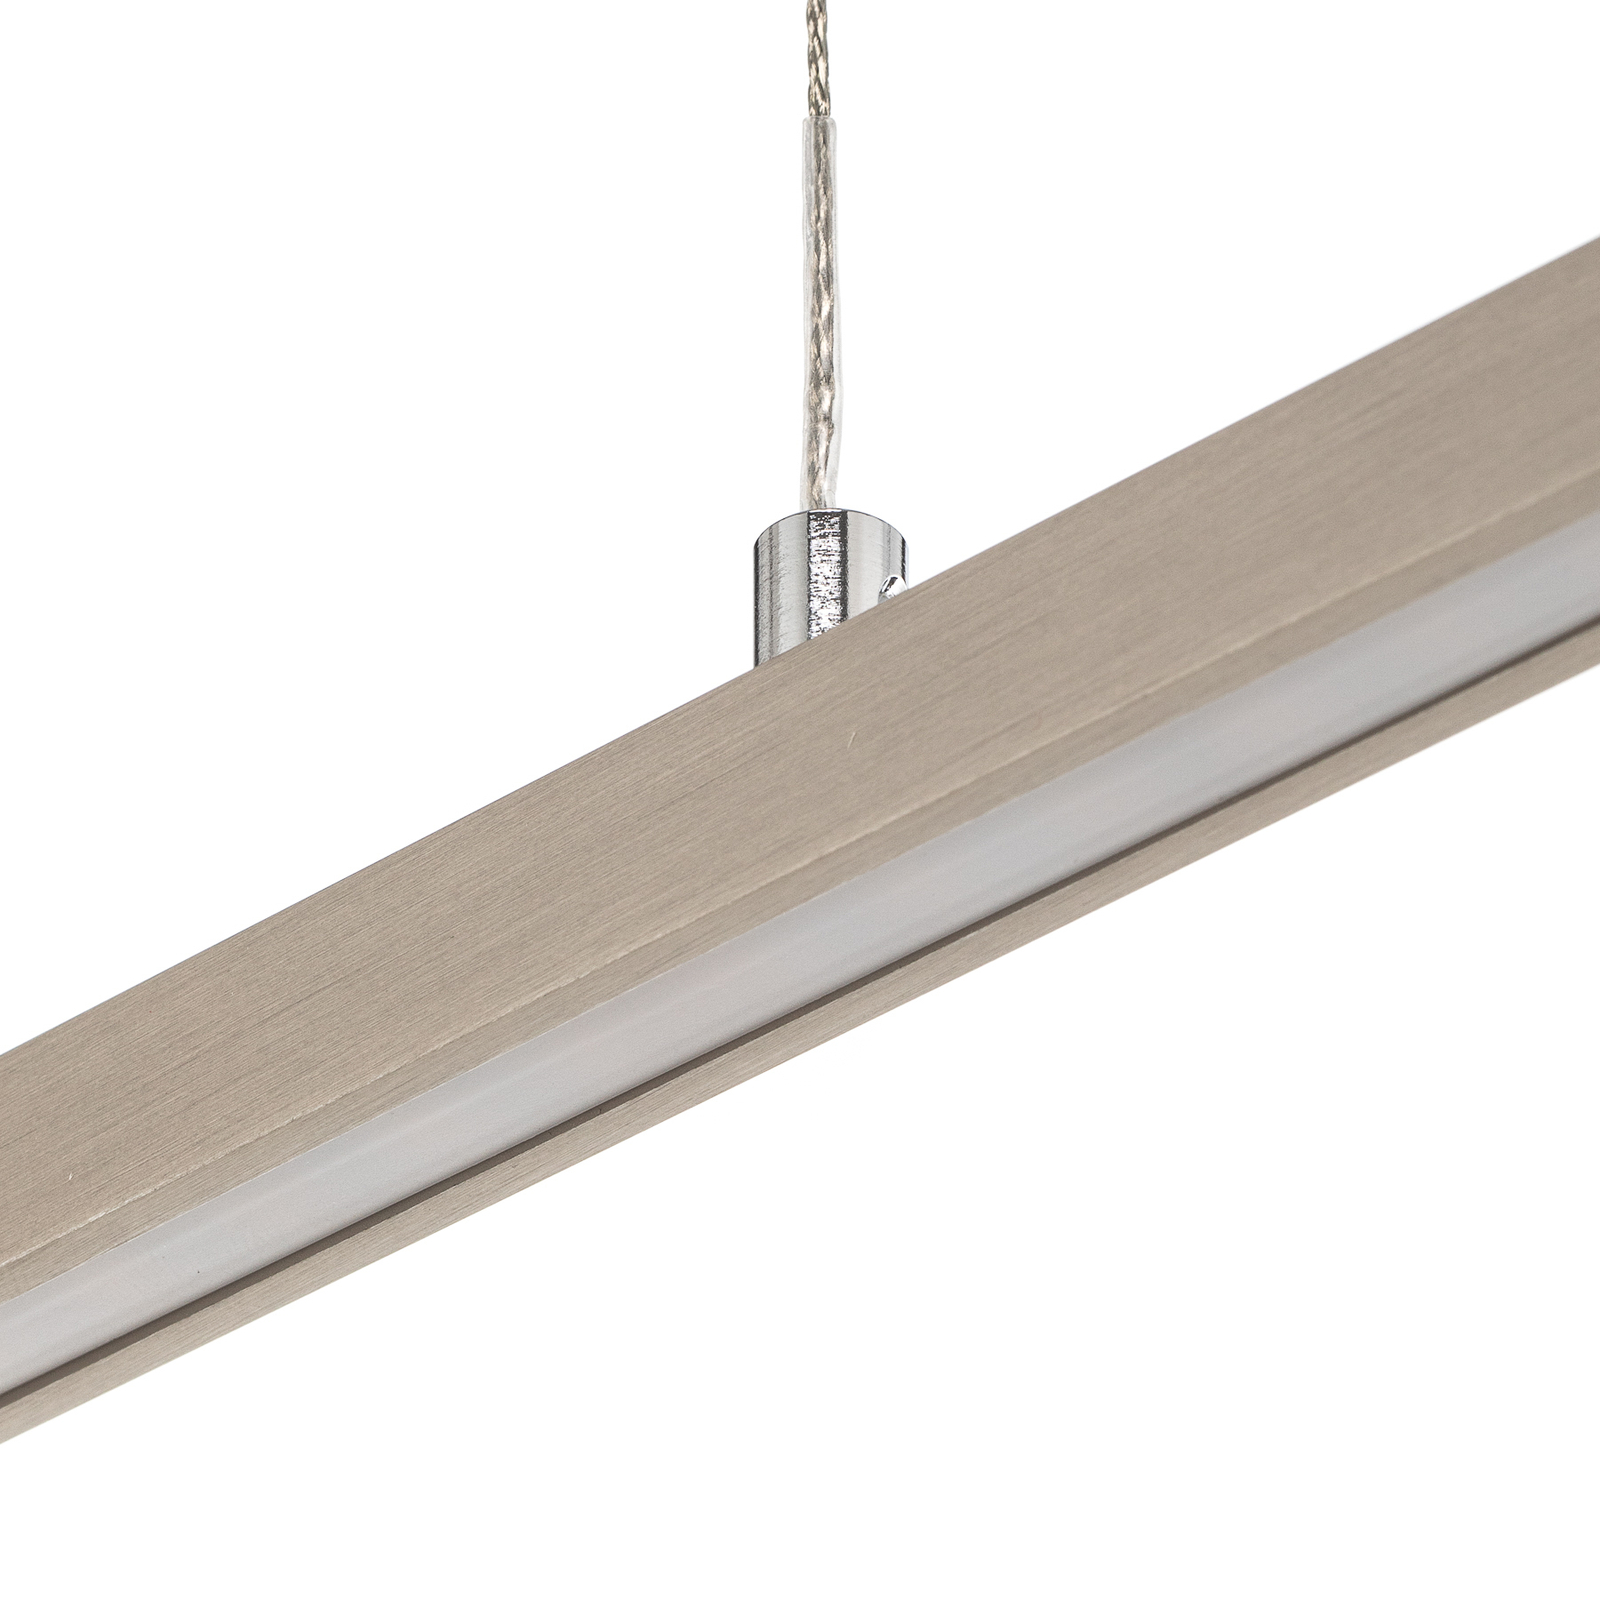 Quitani hanglamp Tolu, nikkel, lengte 178 cm